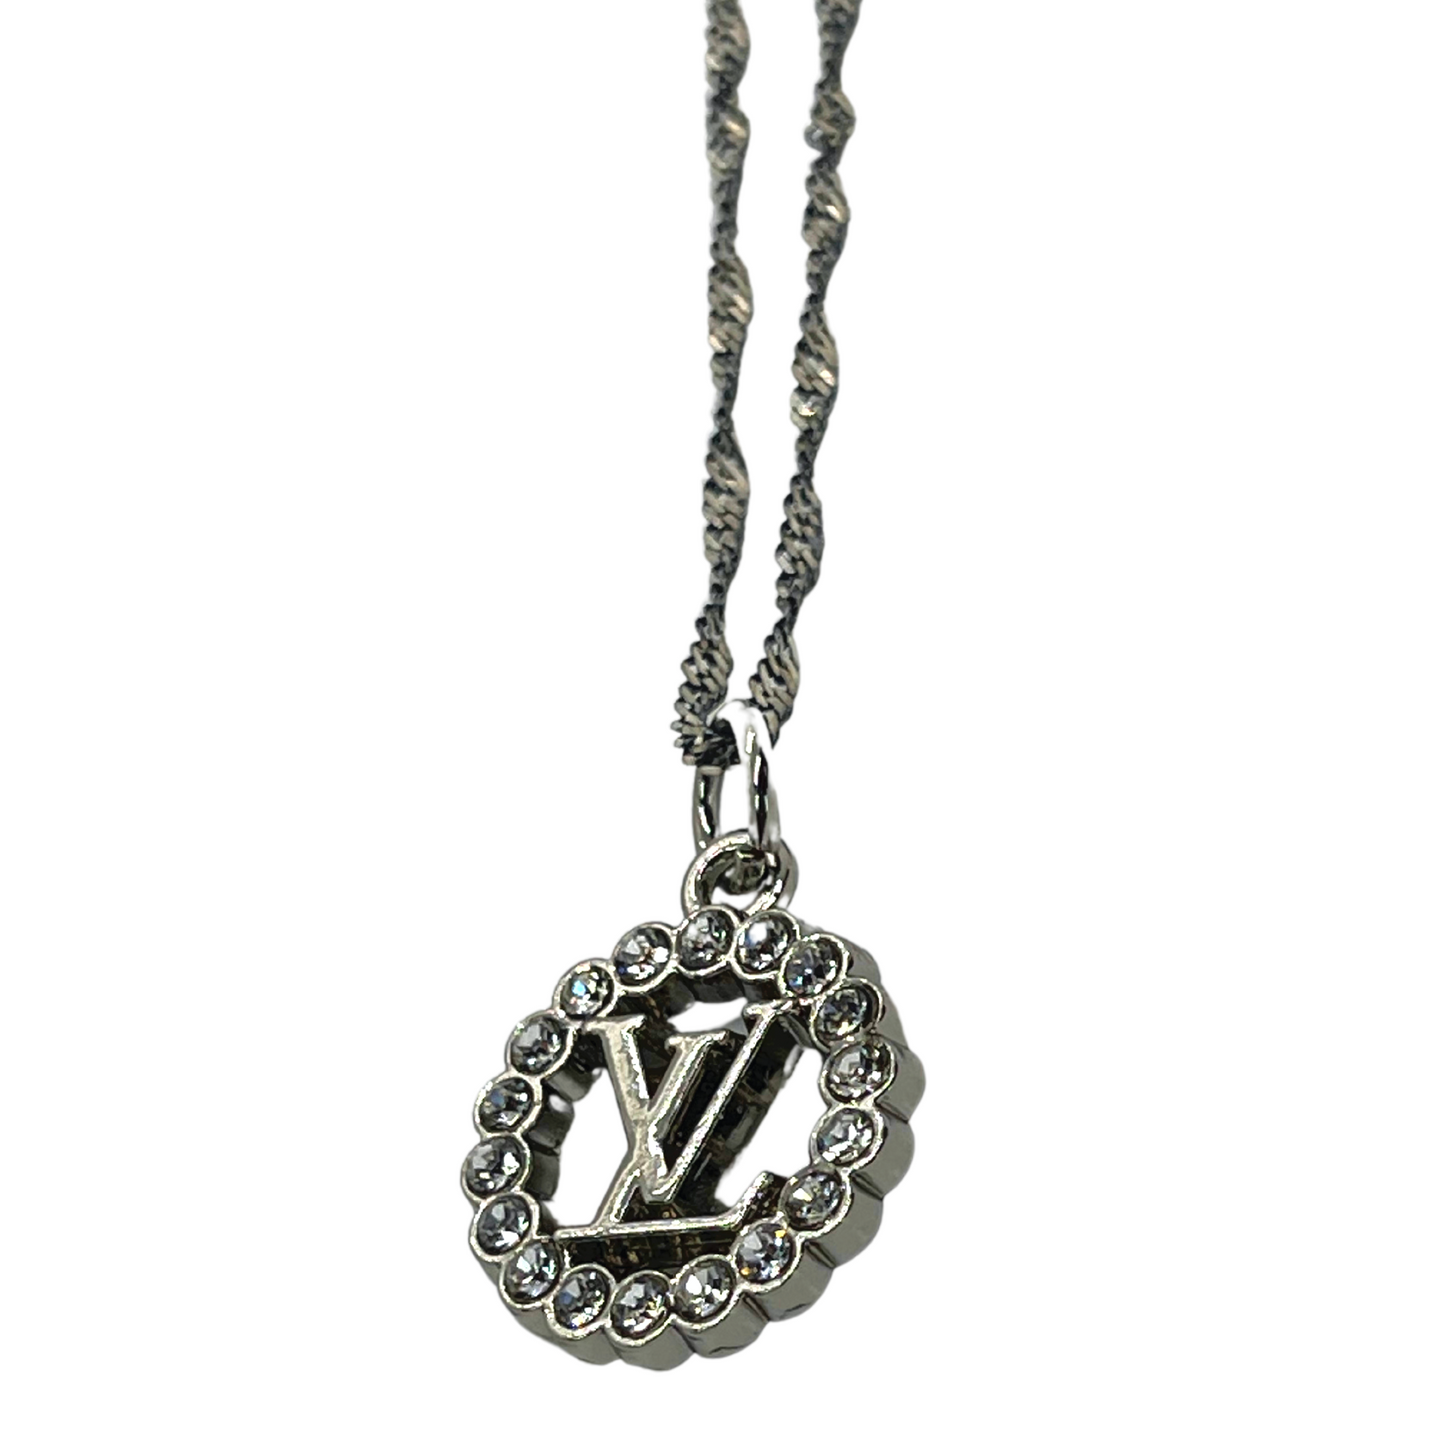 Louis Vuitton, Jewelry, Authentic Louis Vuitton Lv Necklace